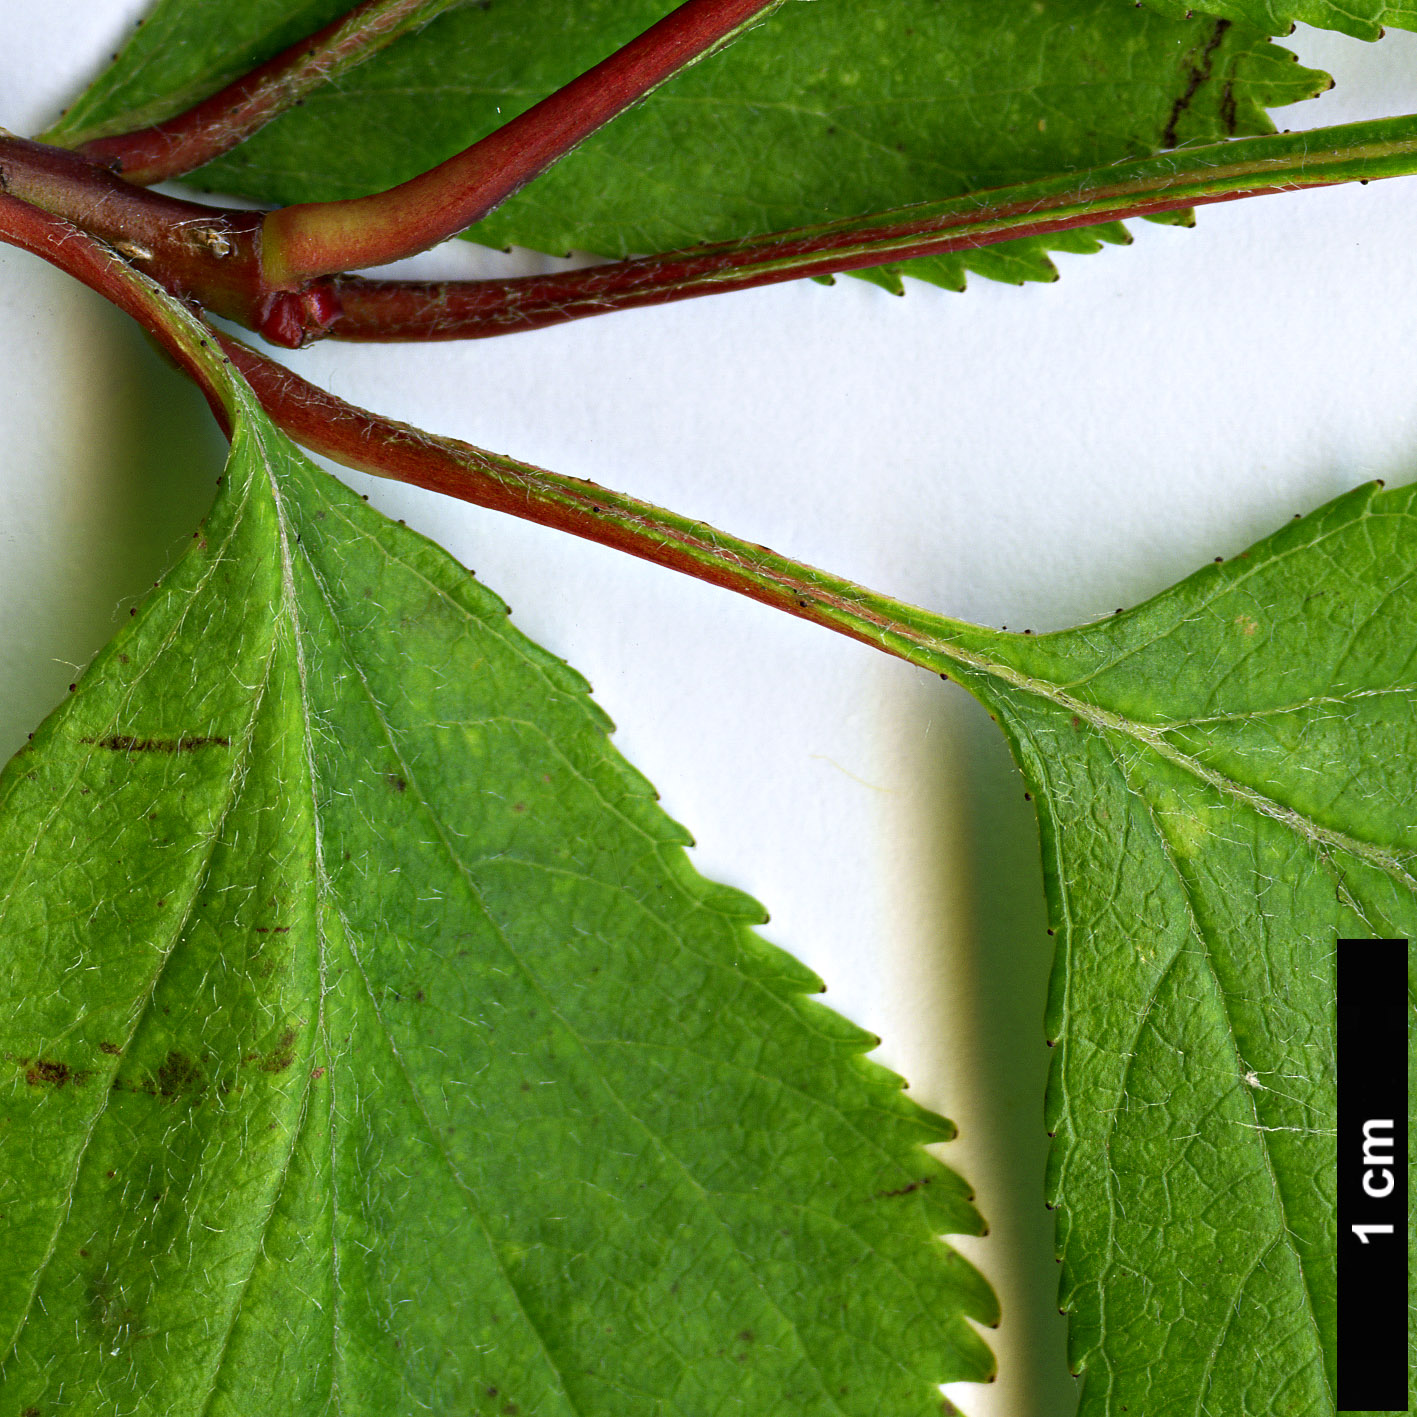 High resolution image: Family: Rosaceae - Genus: Crataegus - Taxon: aquacervensis